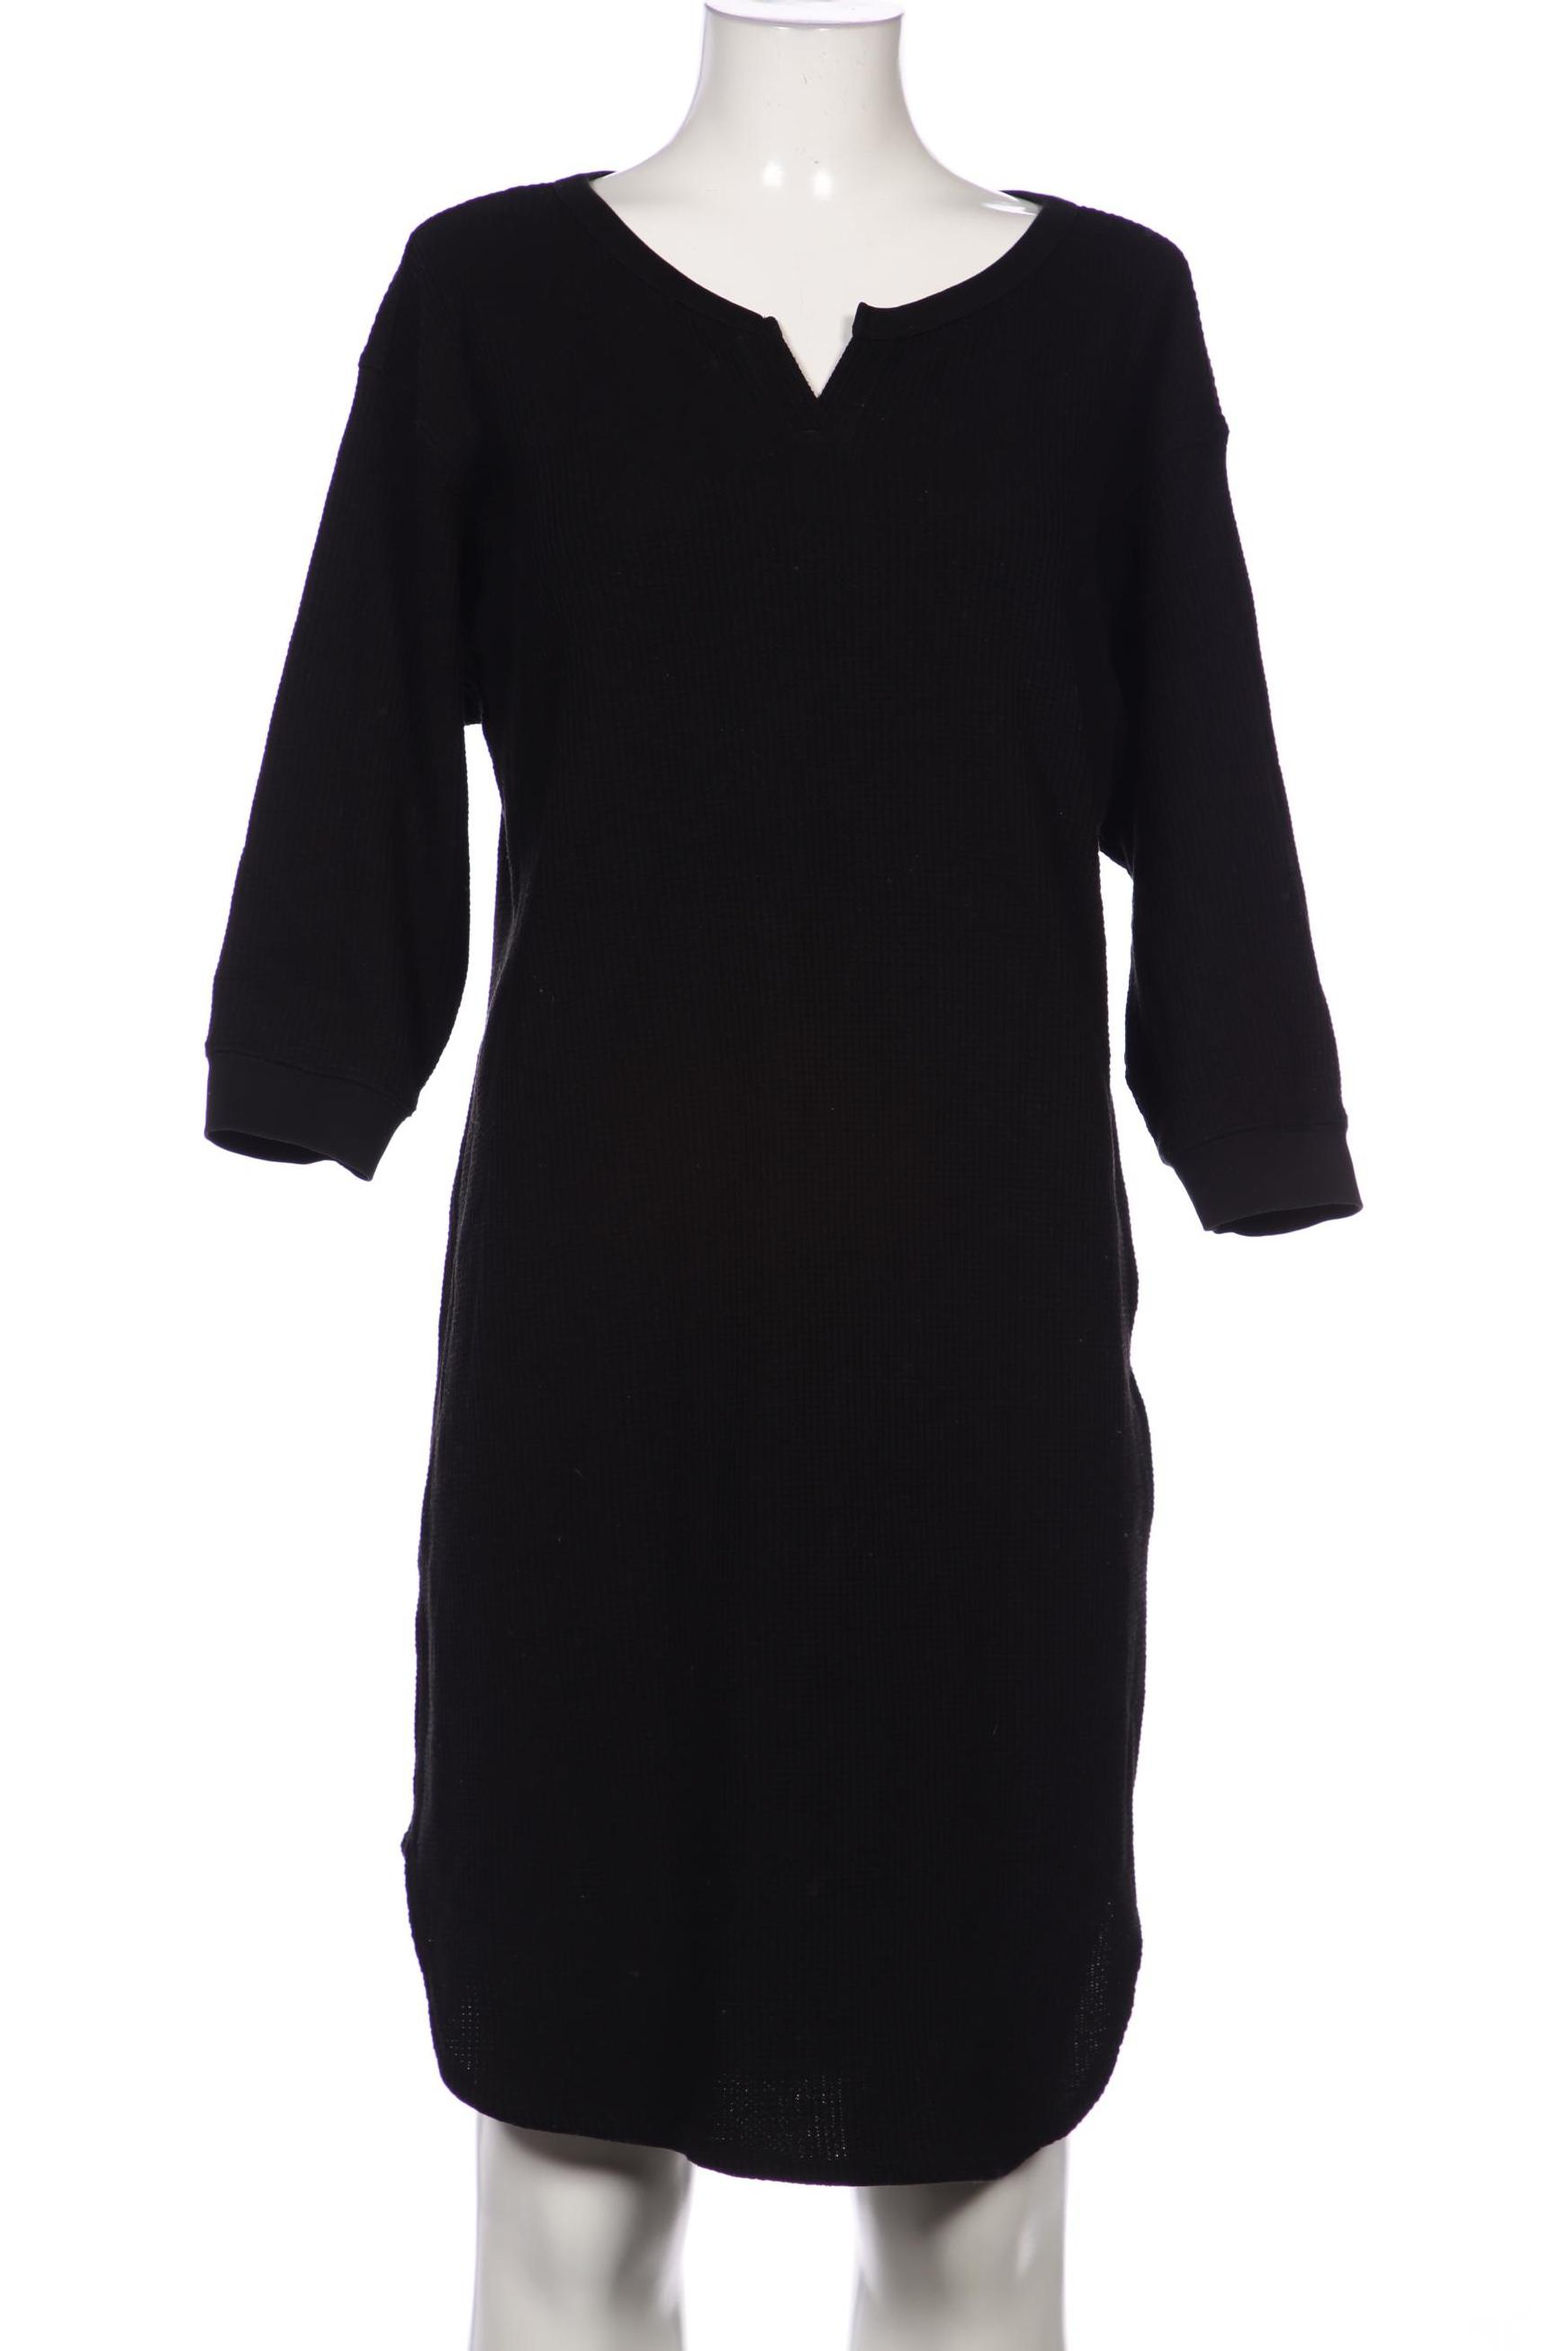 uniqlo Damen Kleid, schwarz, Gr. 38 von uniqlo